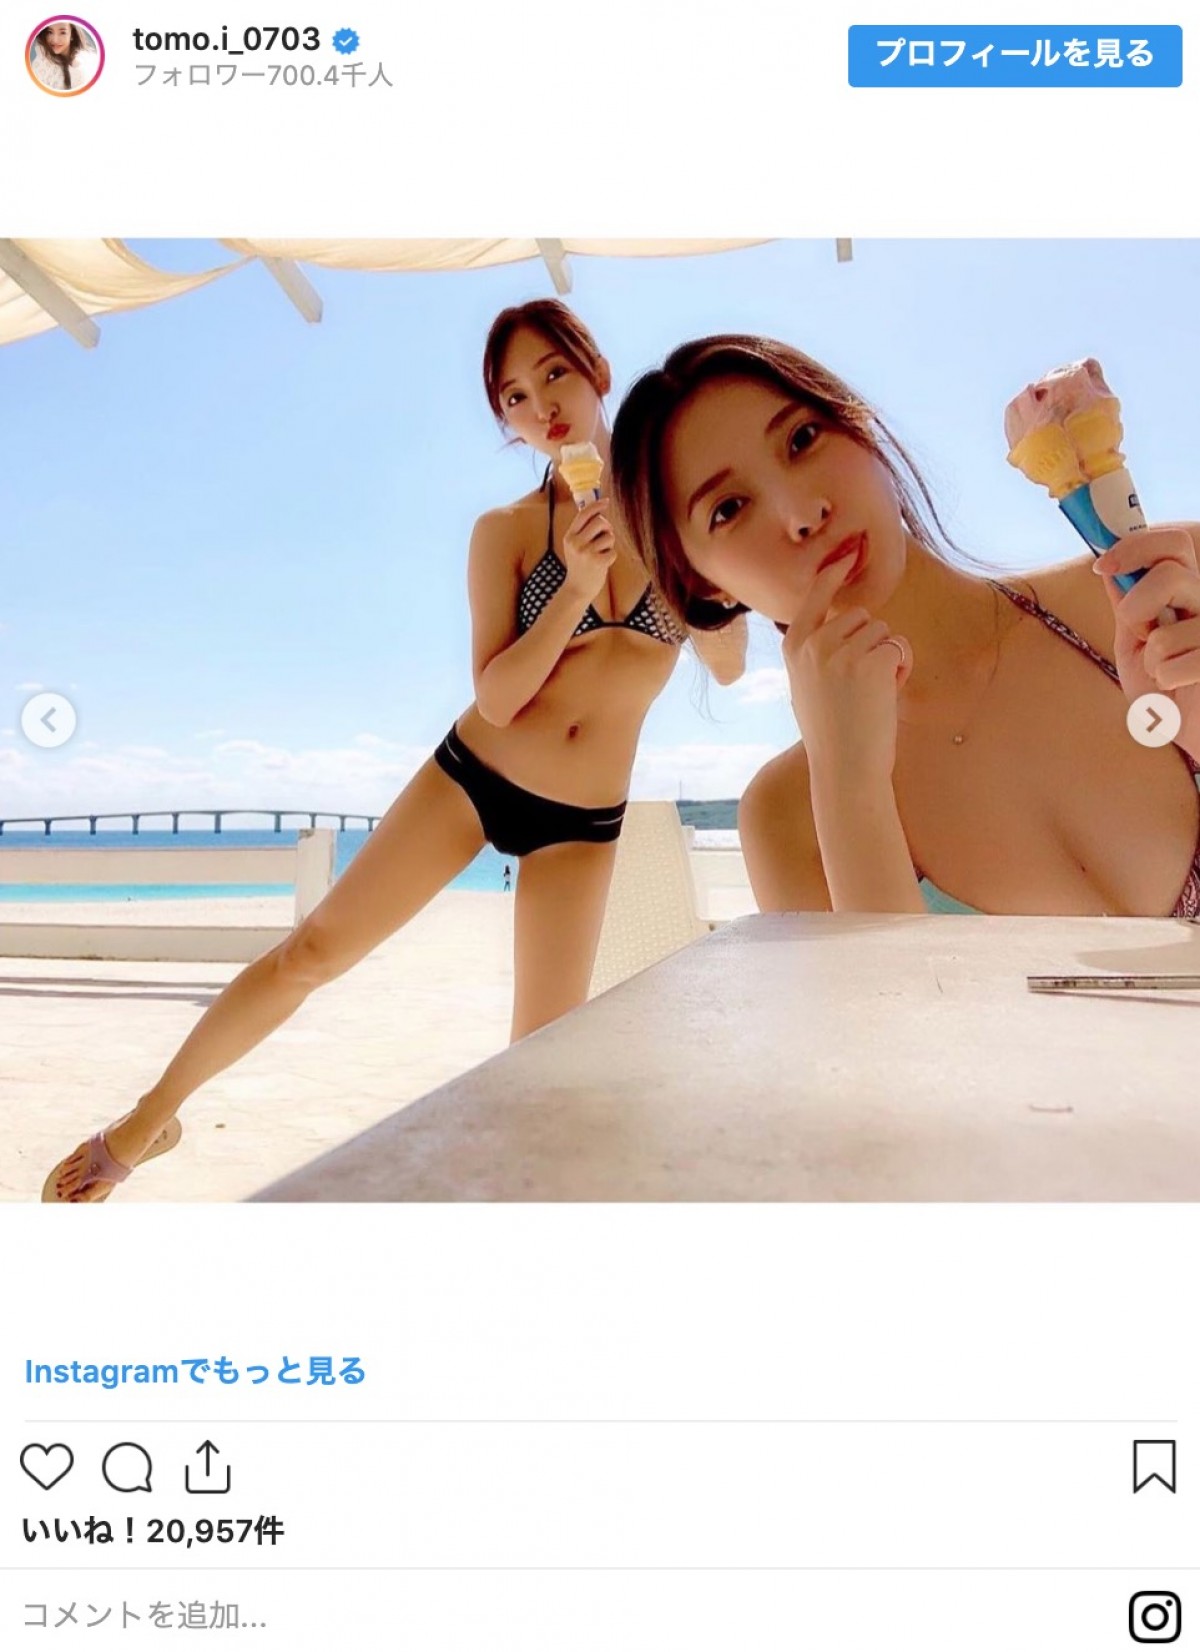 板野友美、沖縄でのビキニショット披露 「美ボディー」「超かわいい」と反響